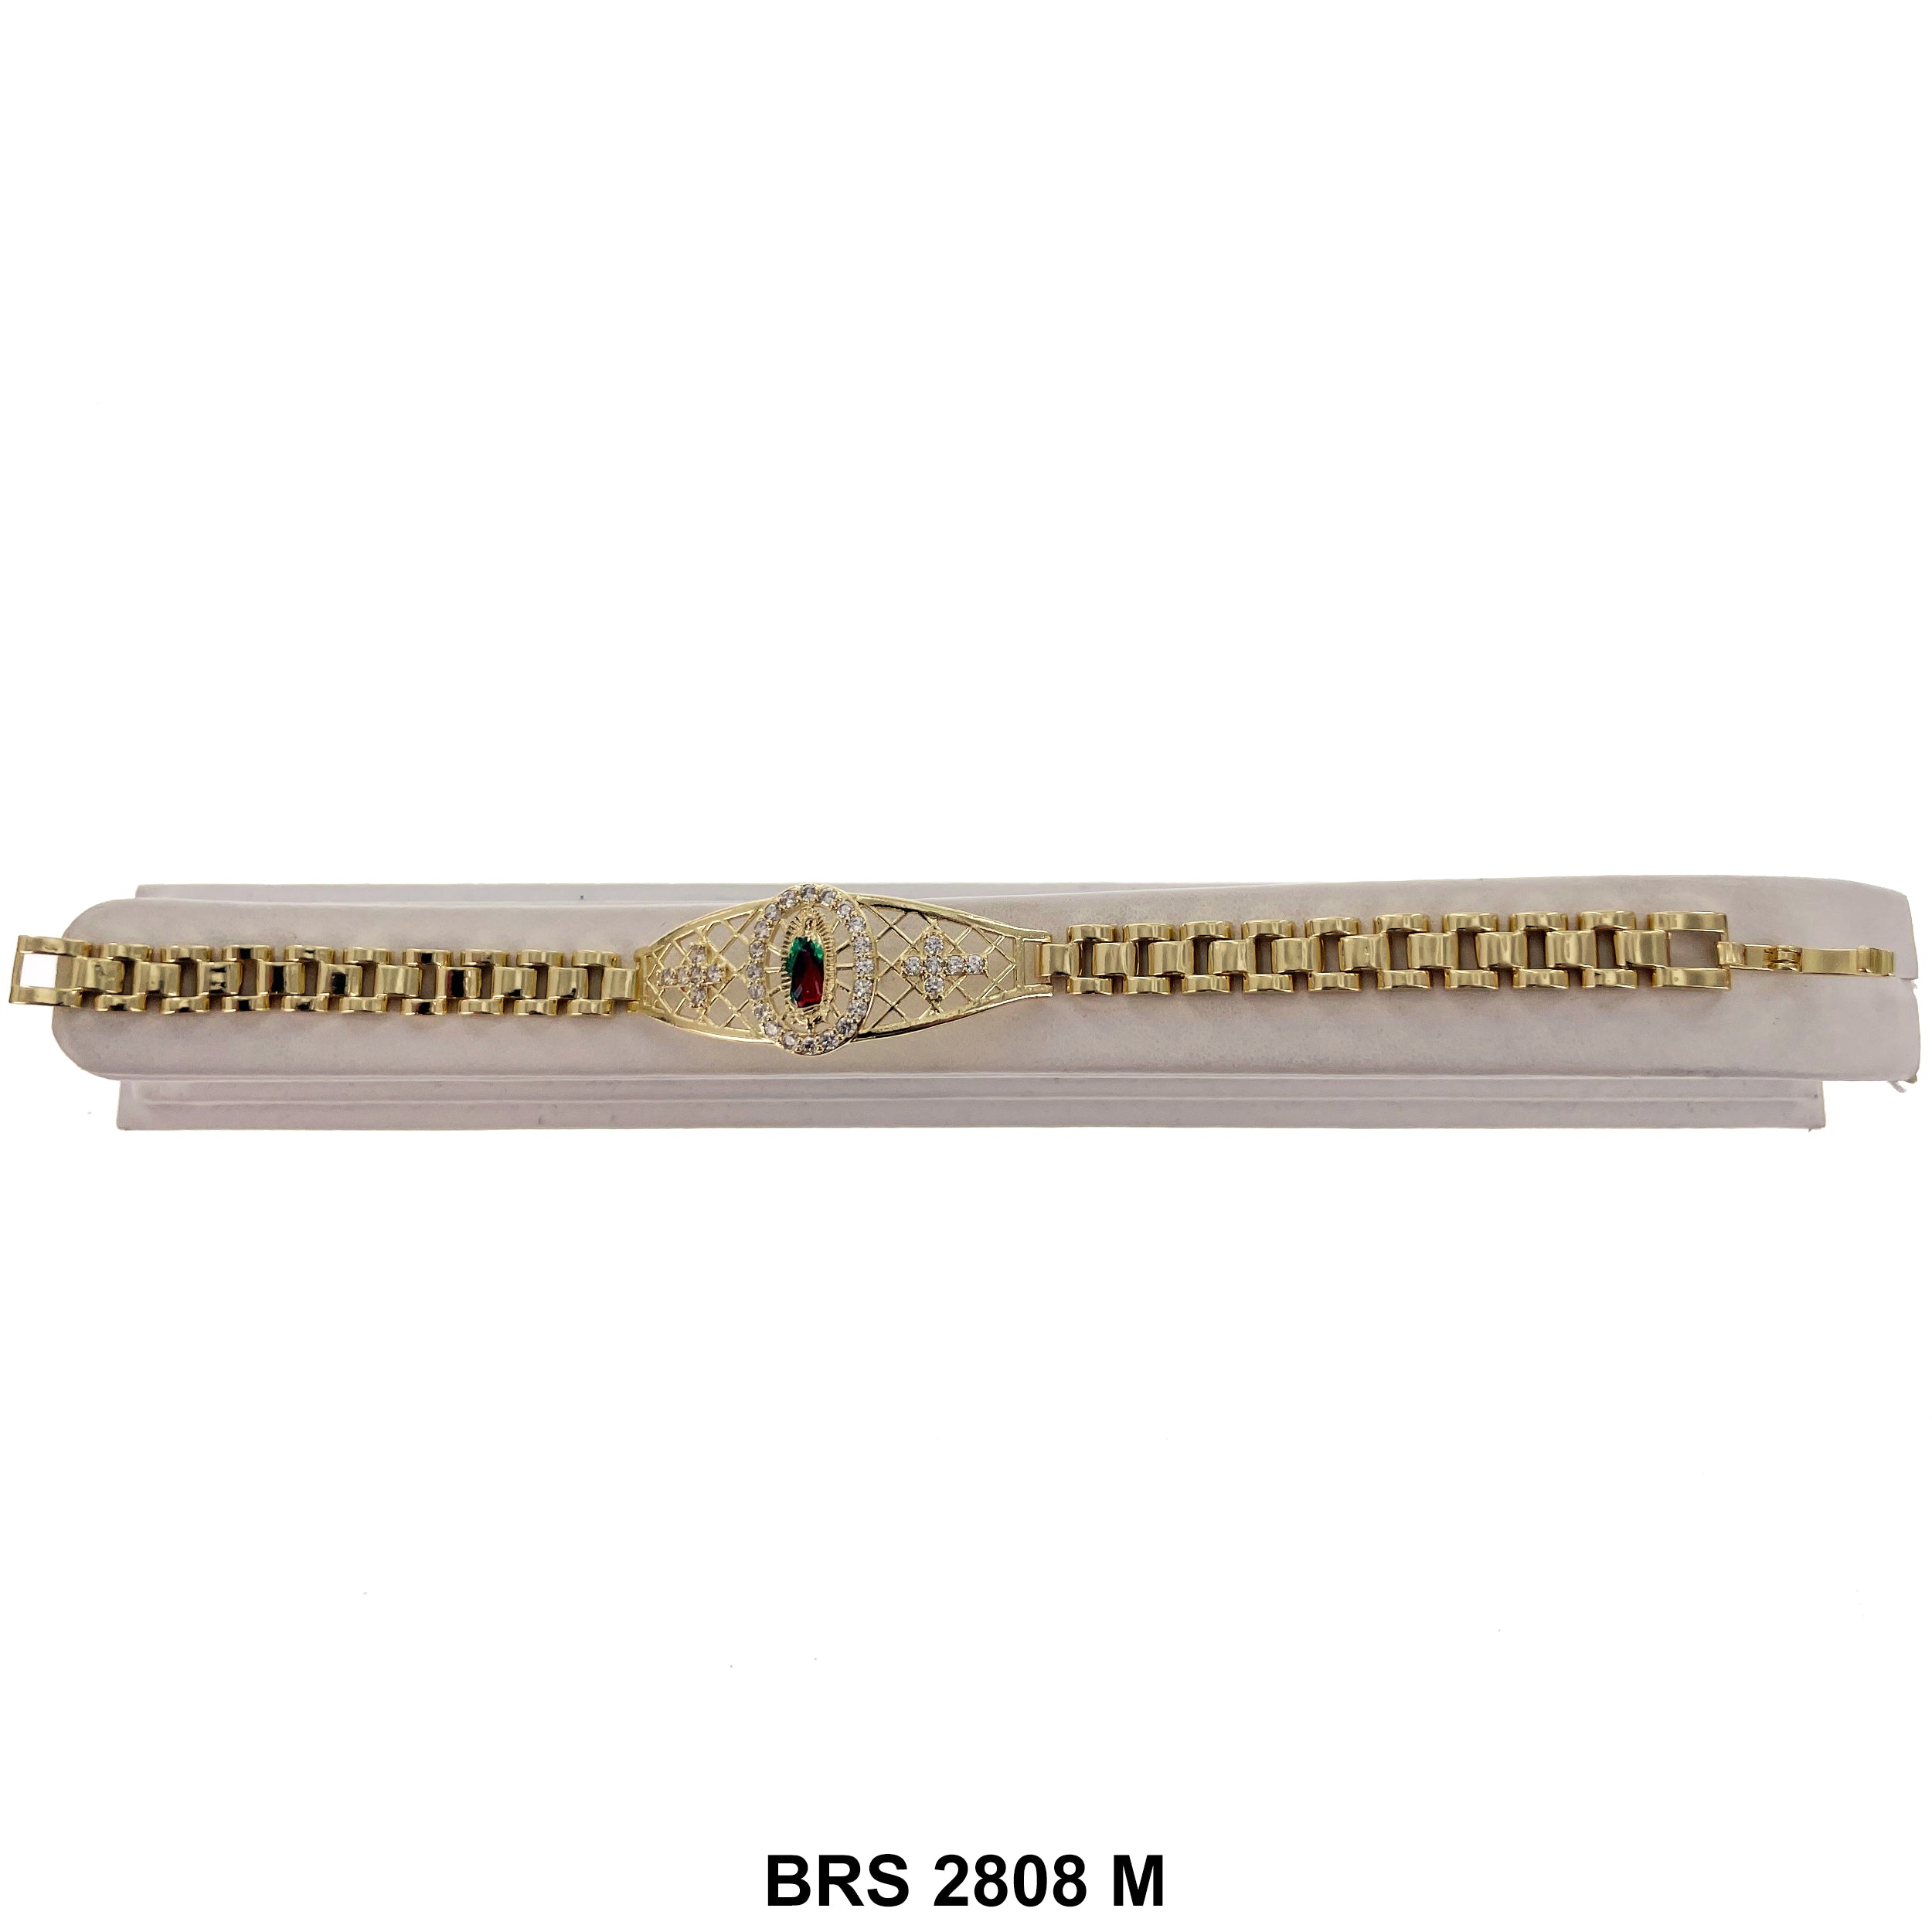 Guadalupe Bracelet BRS 2808 M